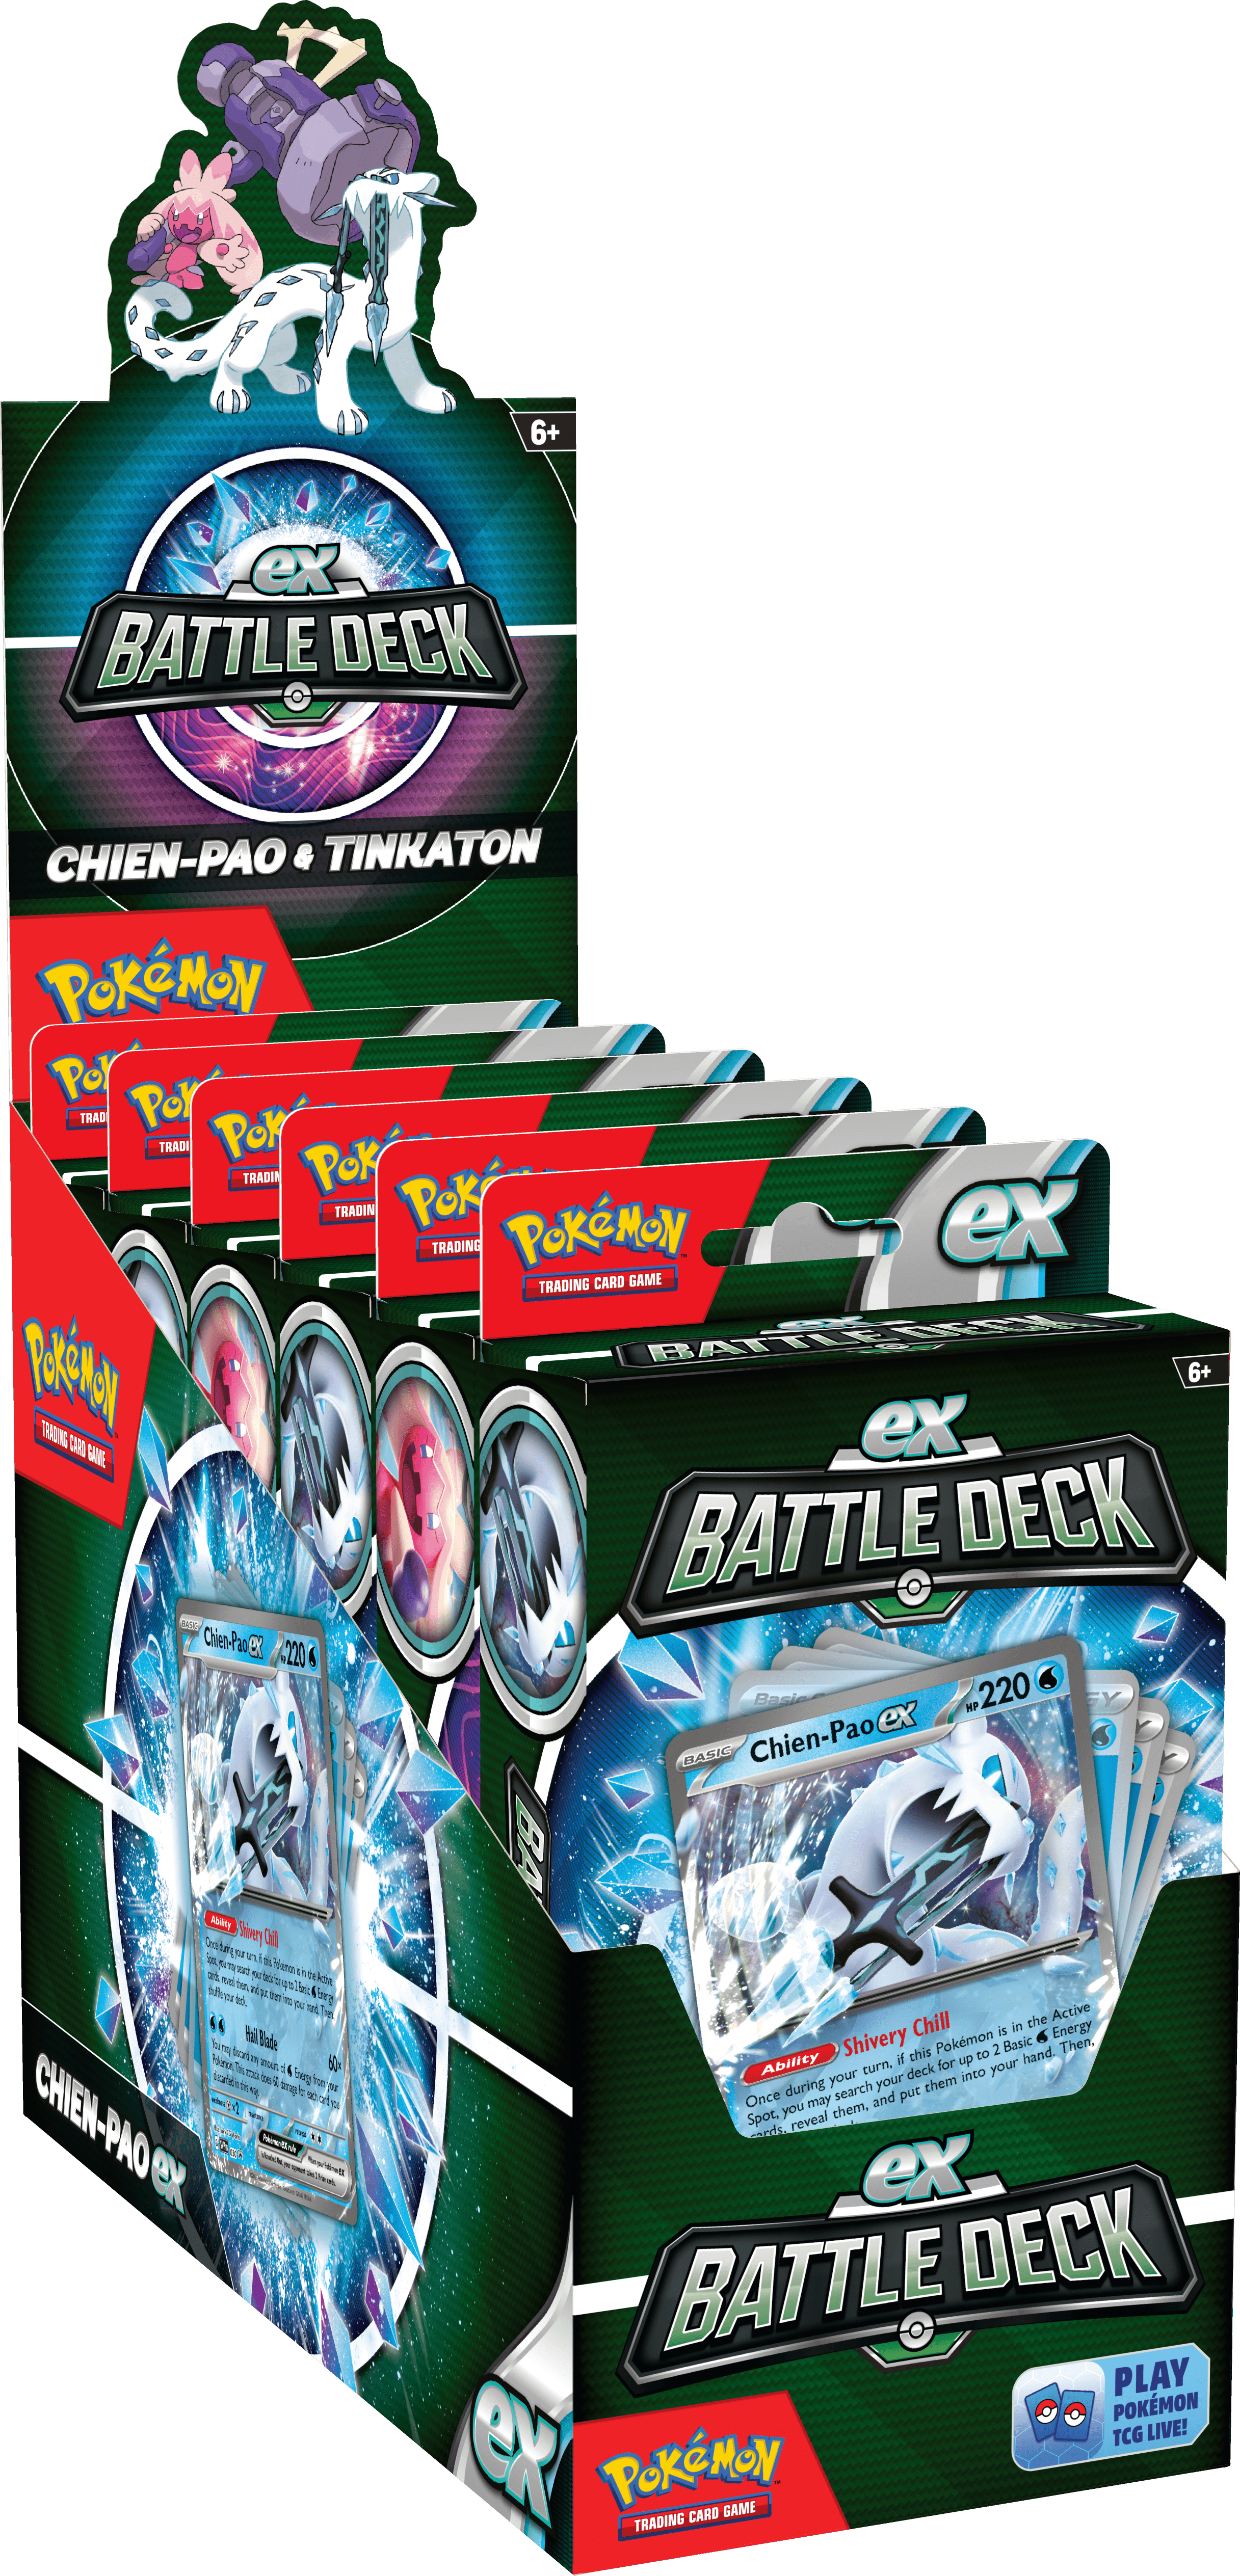 Combine the Palkia VSTAR League Battle Deck with the Chien-Pao ex Battle  Deck! - (Pokemon TCG) 